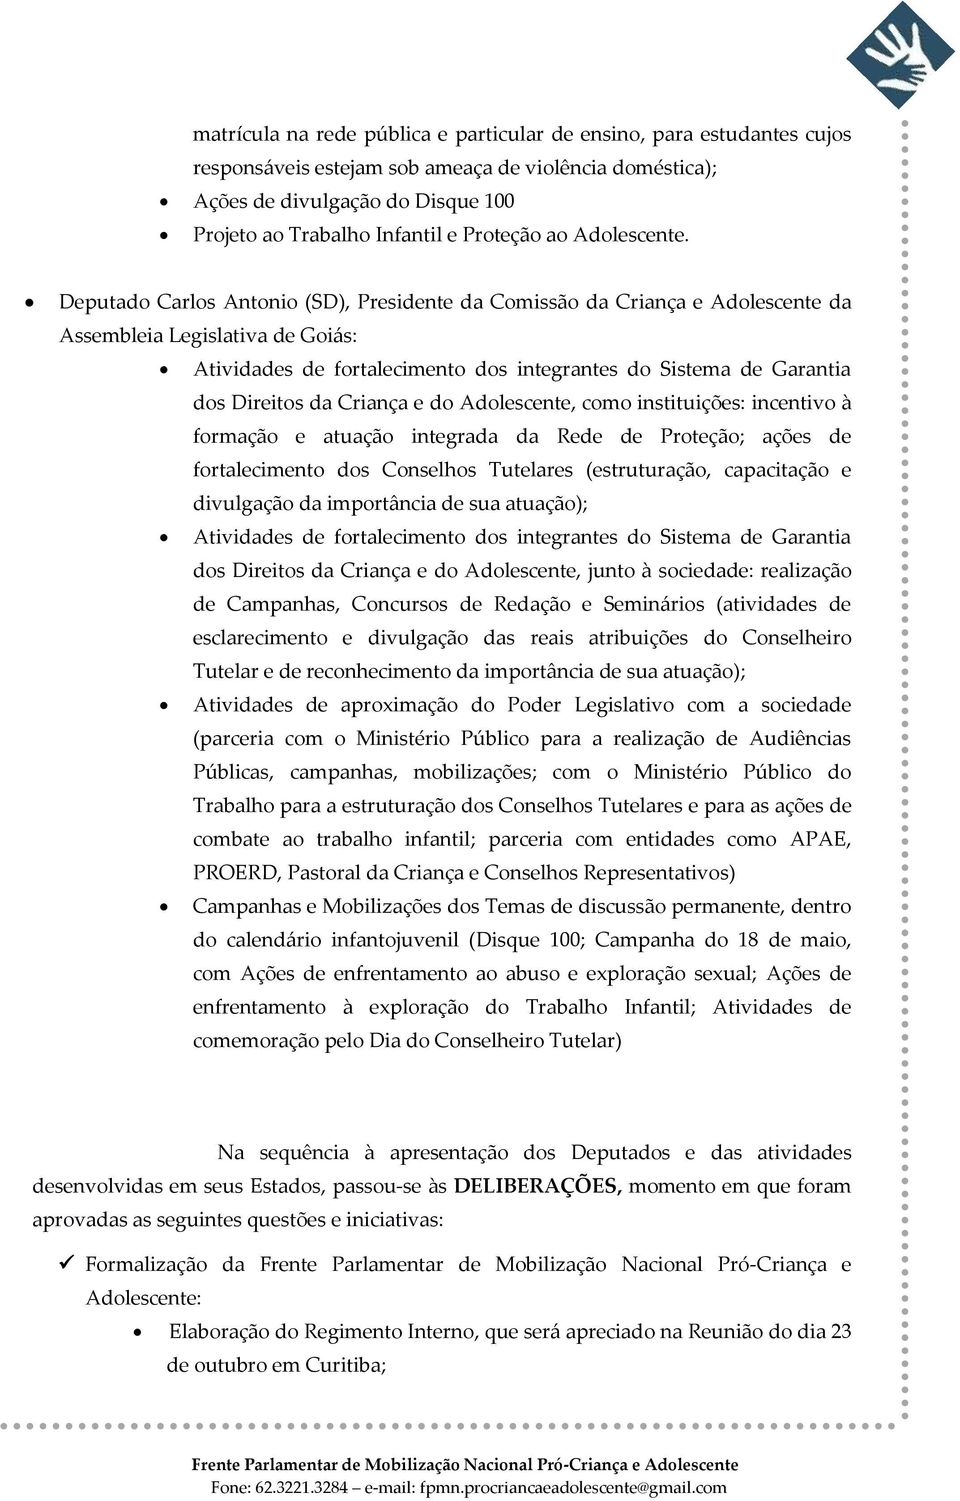 Deputado Carlos Antonio (SD), Presidente da Comissão da Criança e Adolescente da Assembleia Legislativa de Goiás: Atividades de fortalecimento dos integrantes do Sistema de Garantia dos Direitos da